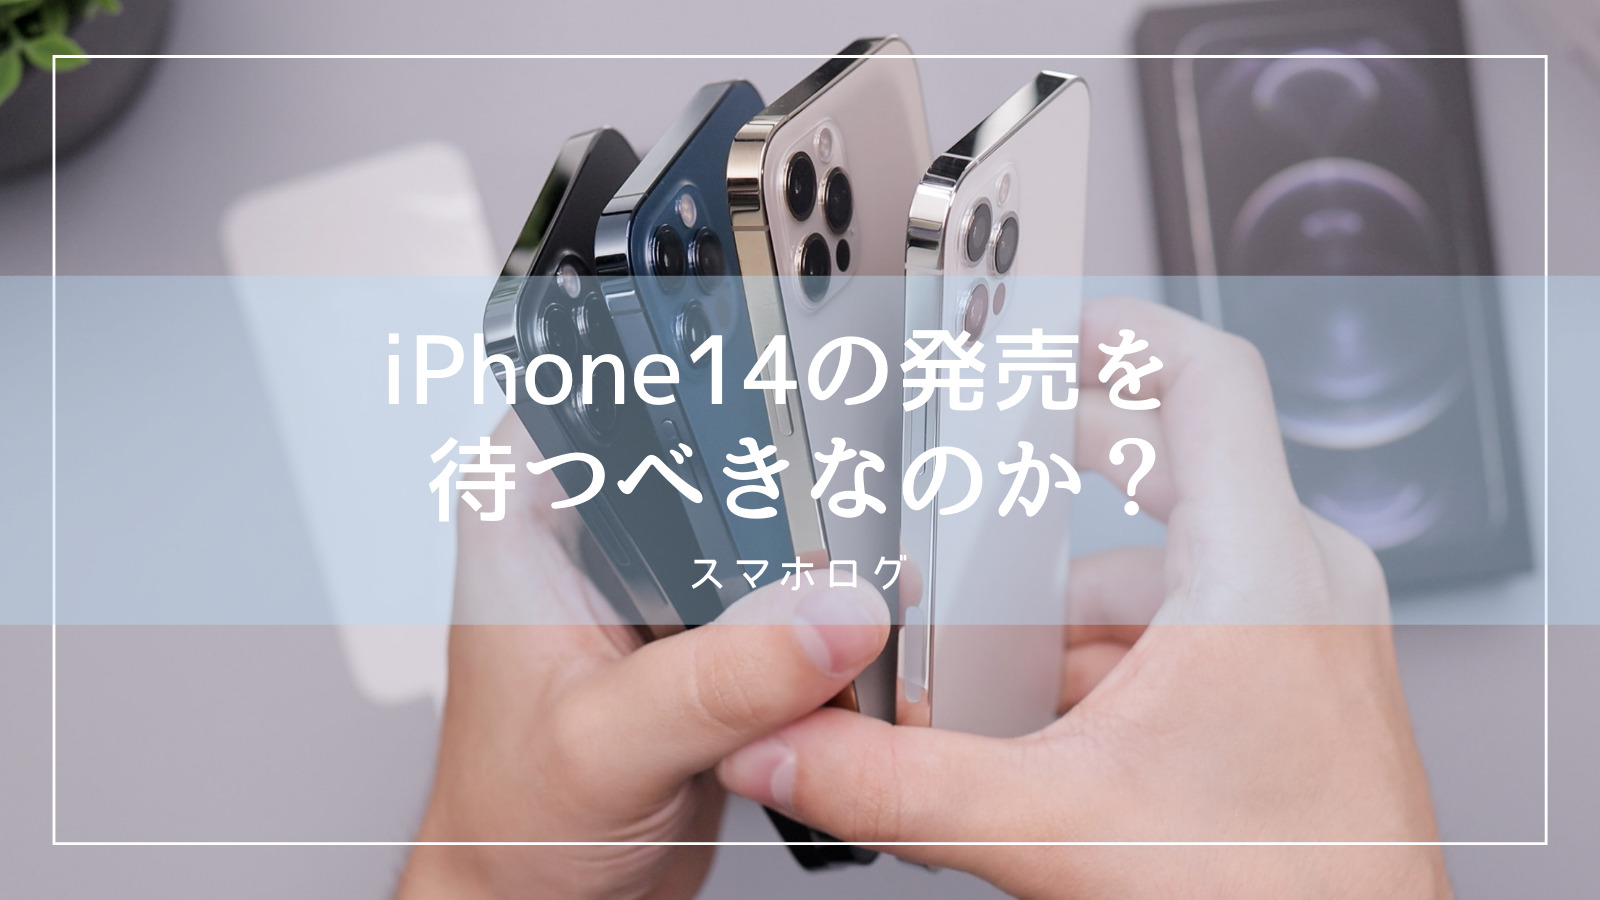 14 べき アイフォン 待つ iPhone13は待つべきか？スマホ選びのプロが考える判断基準はこれ